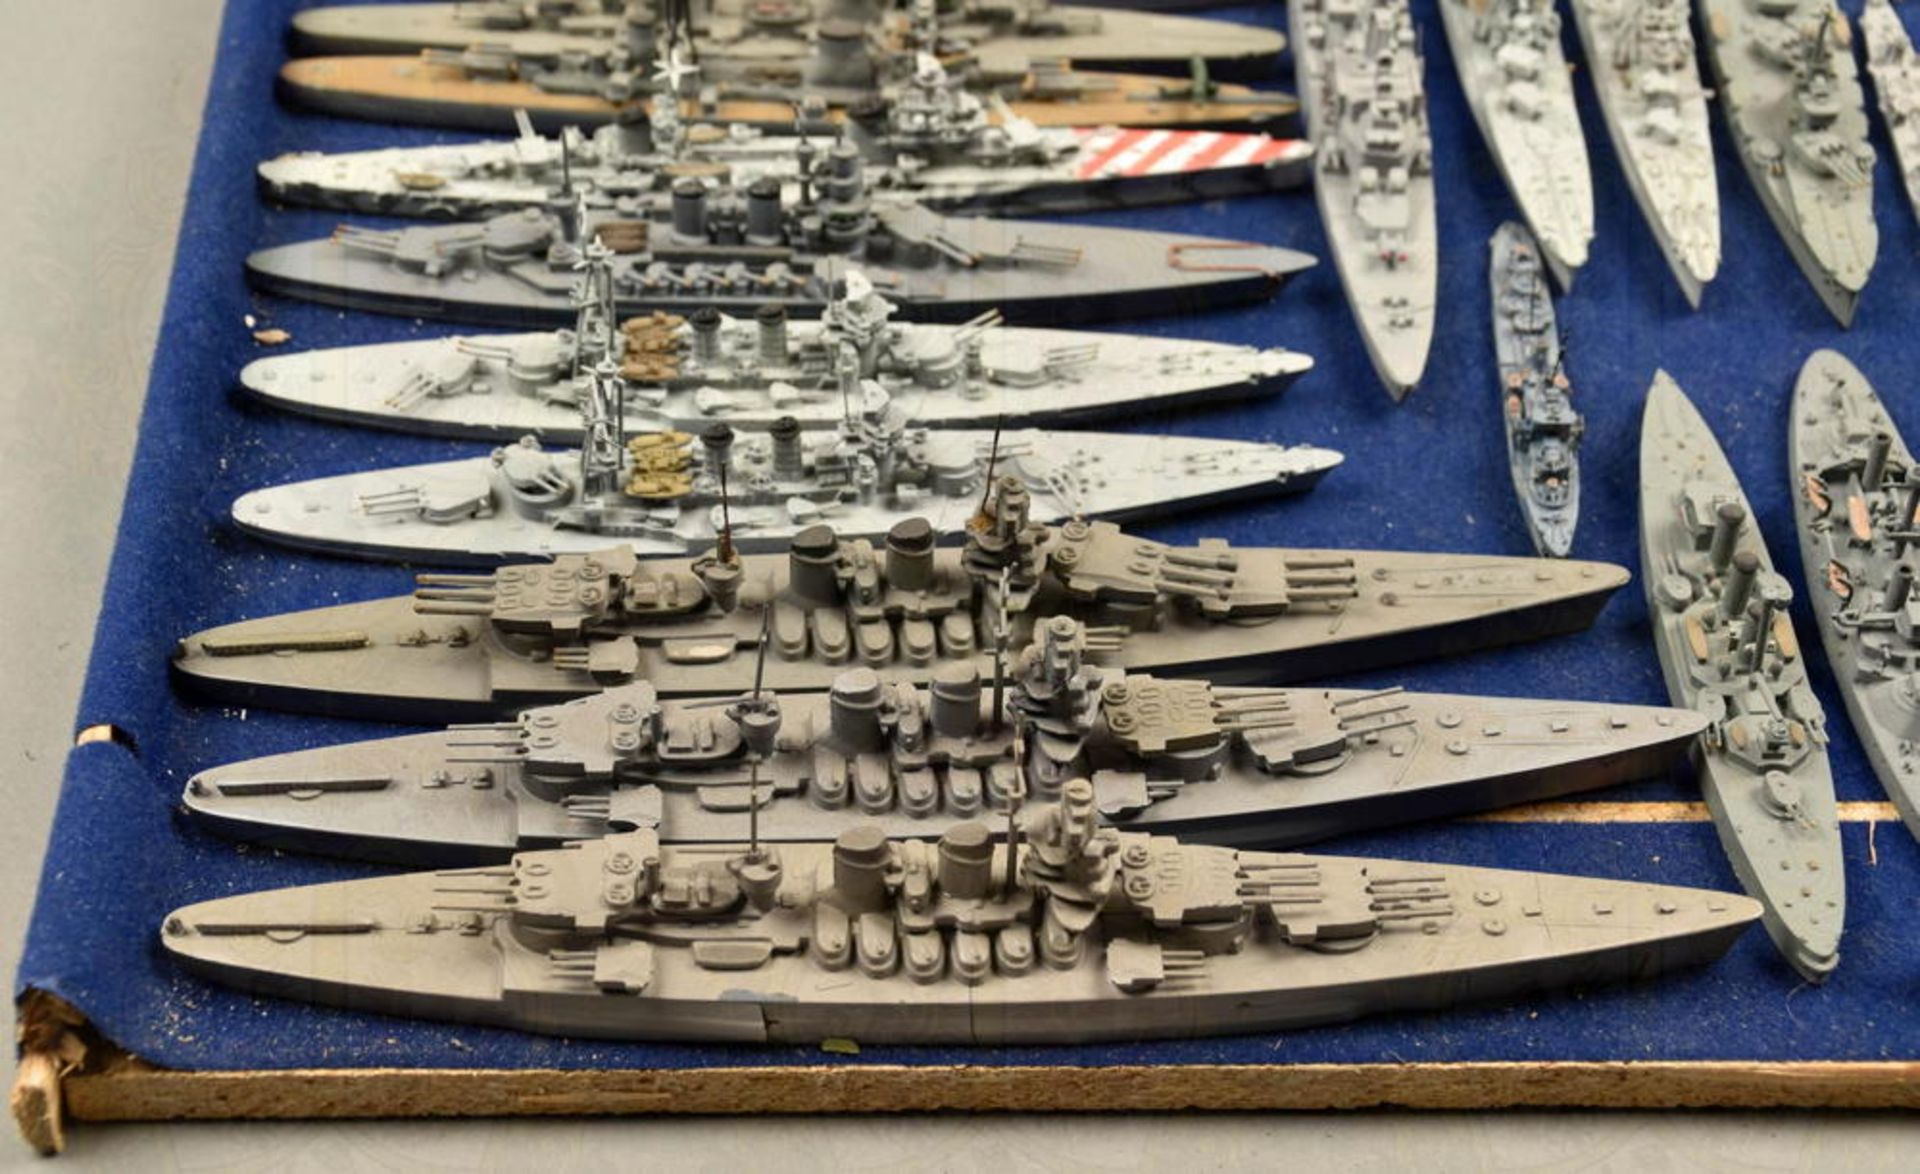 100 Schiffsmodelle italienische Kriegsmarine - Image 3 of 3